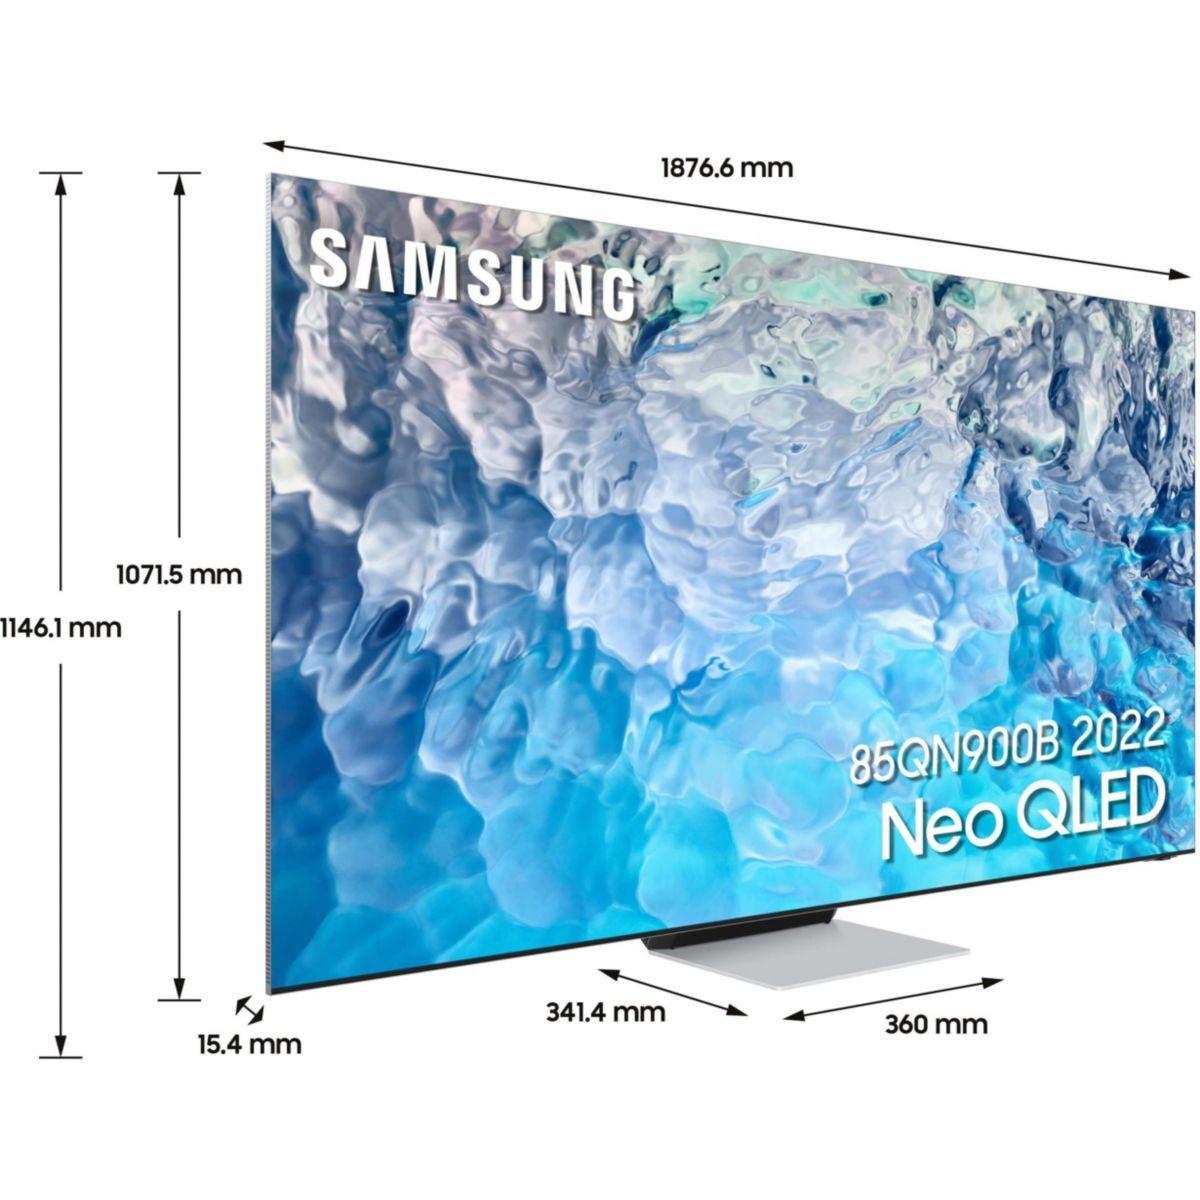 TV QLED SAMSUNG NeoQLED QE85QN900B 2022